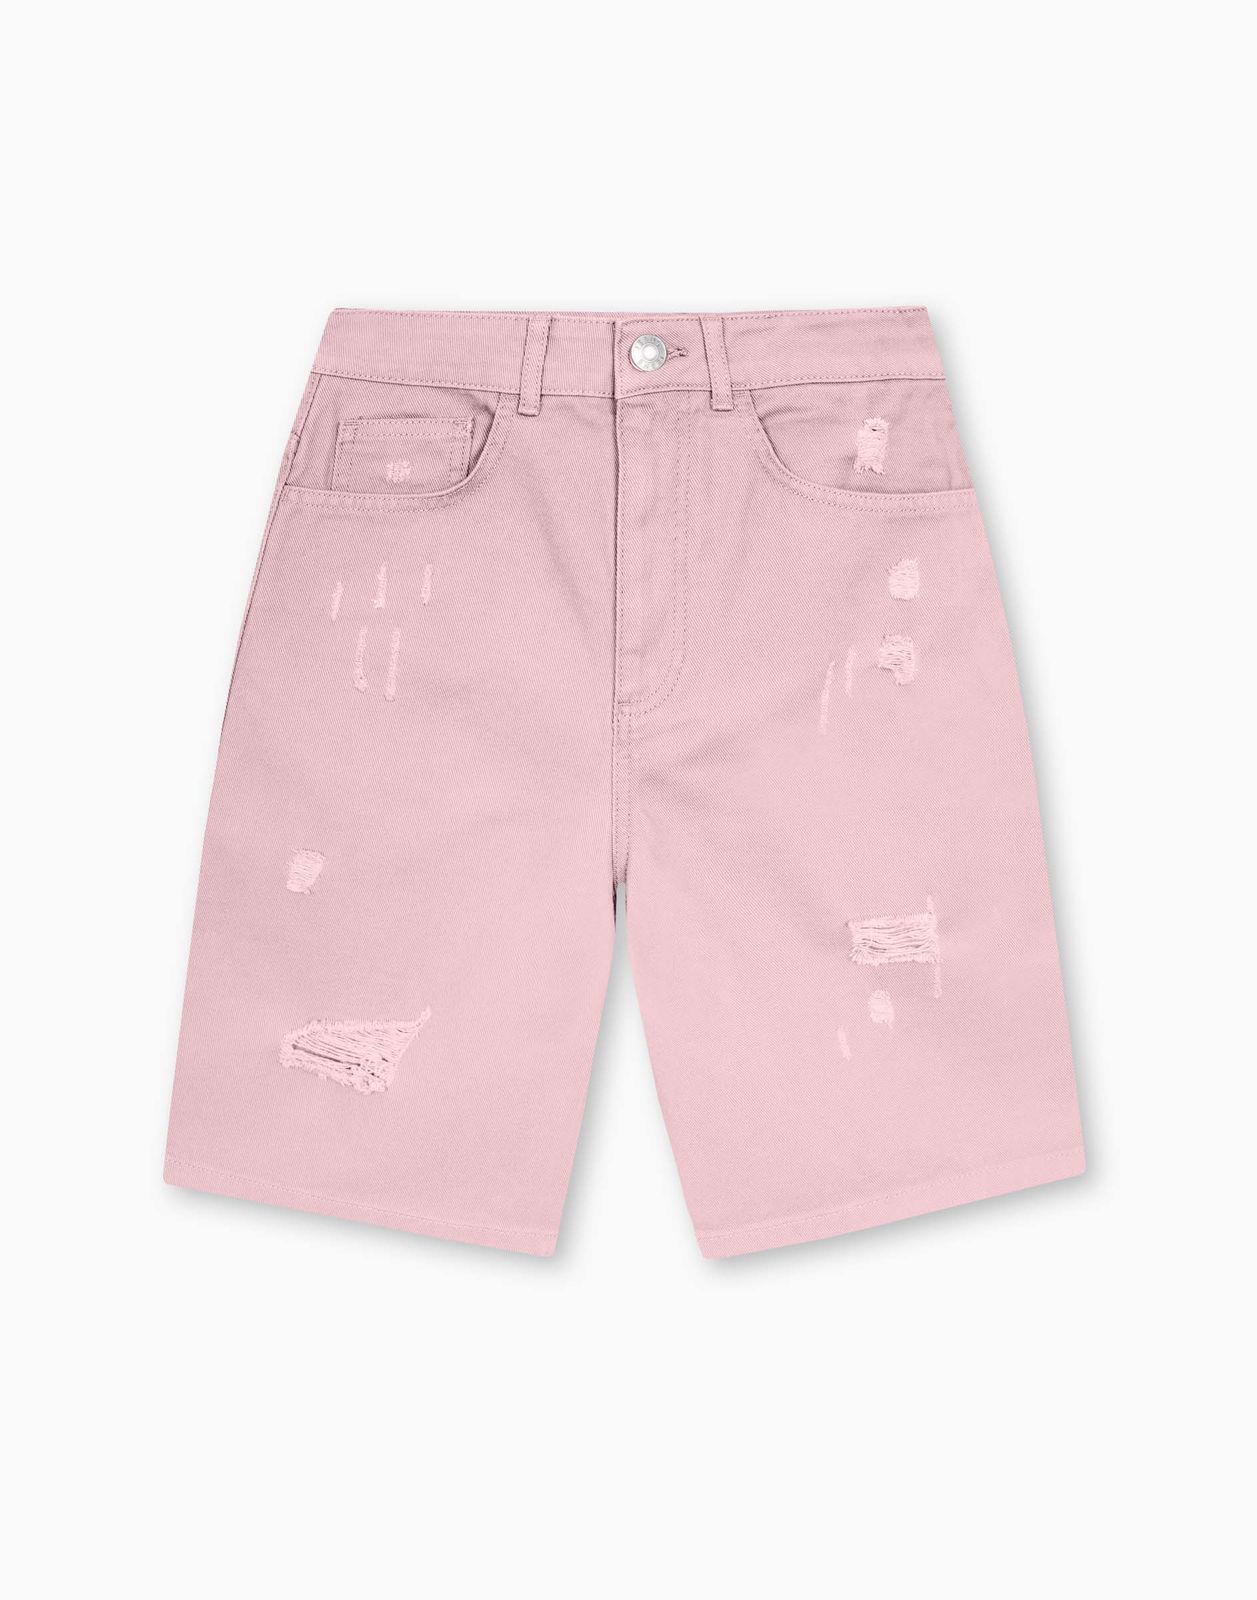 Шорты женские Gloria Jeans GSH009922 светло-розовый M/170